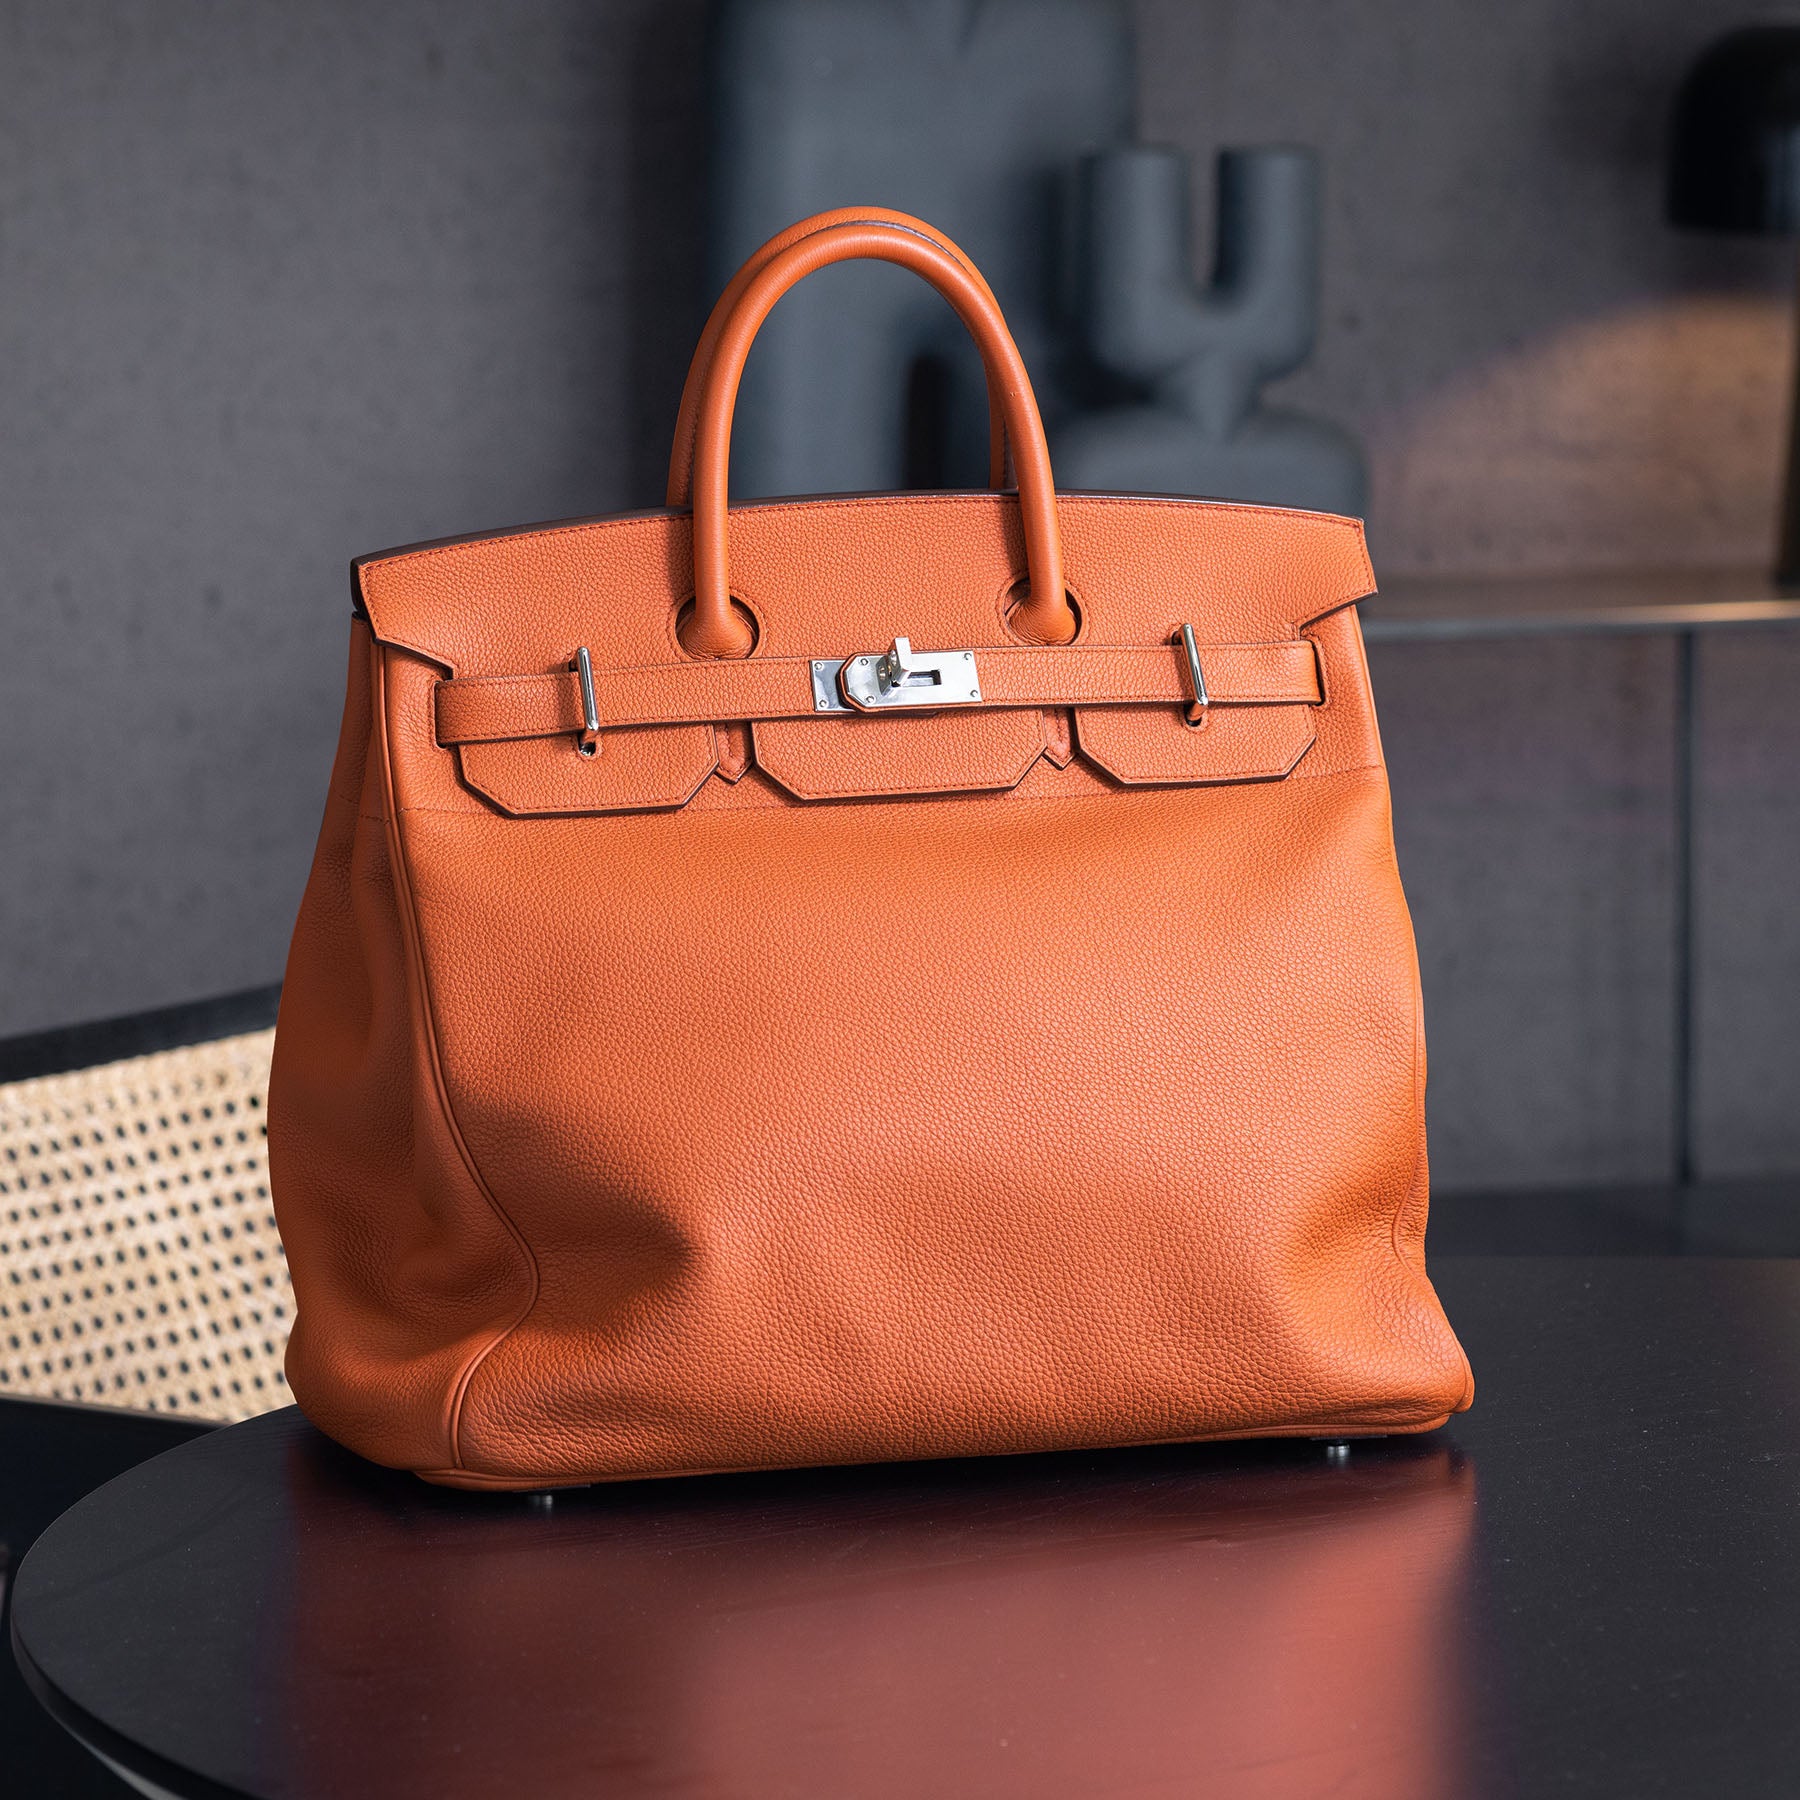 Hermes Iconic Women's Bag Handbag Togo Leather Birkin Bag 40 Sac  Handbag